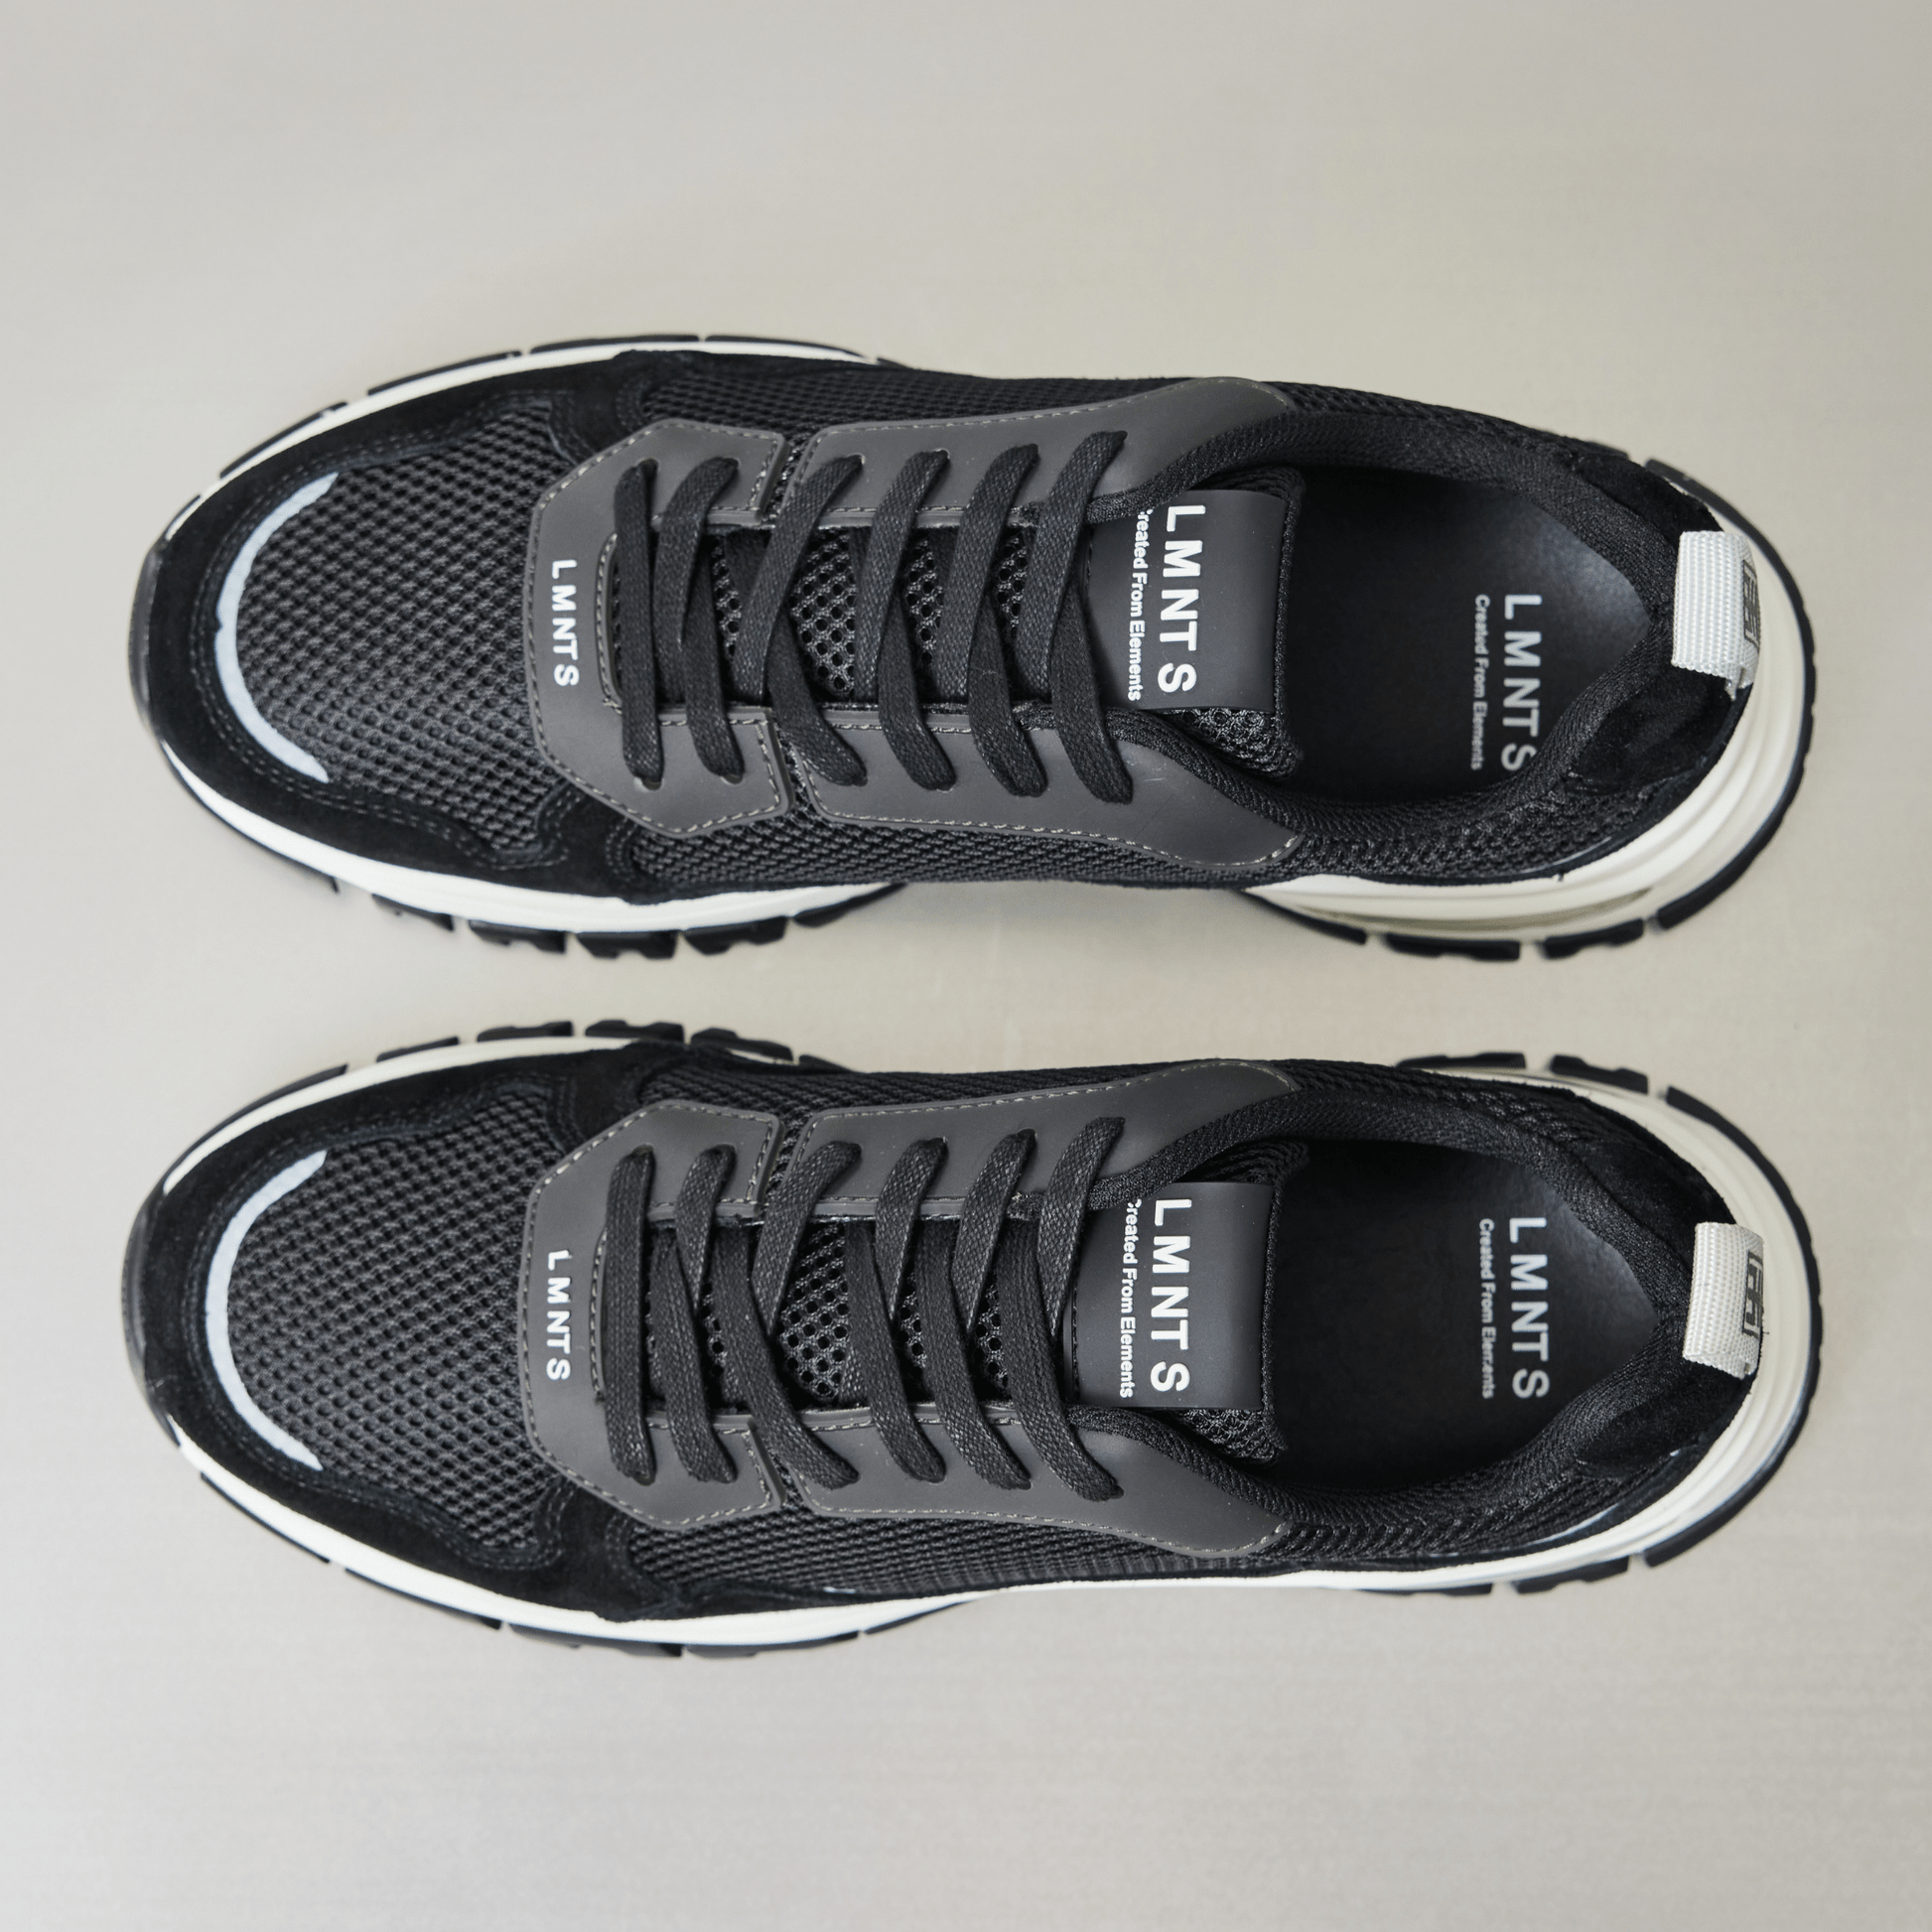 LMNTS Footwear Alpha Runner - Black / White